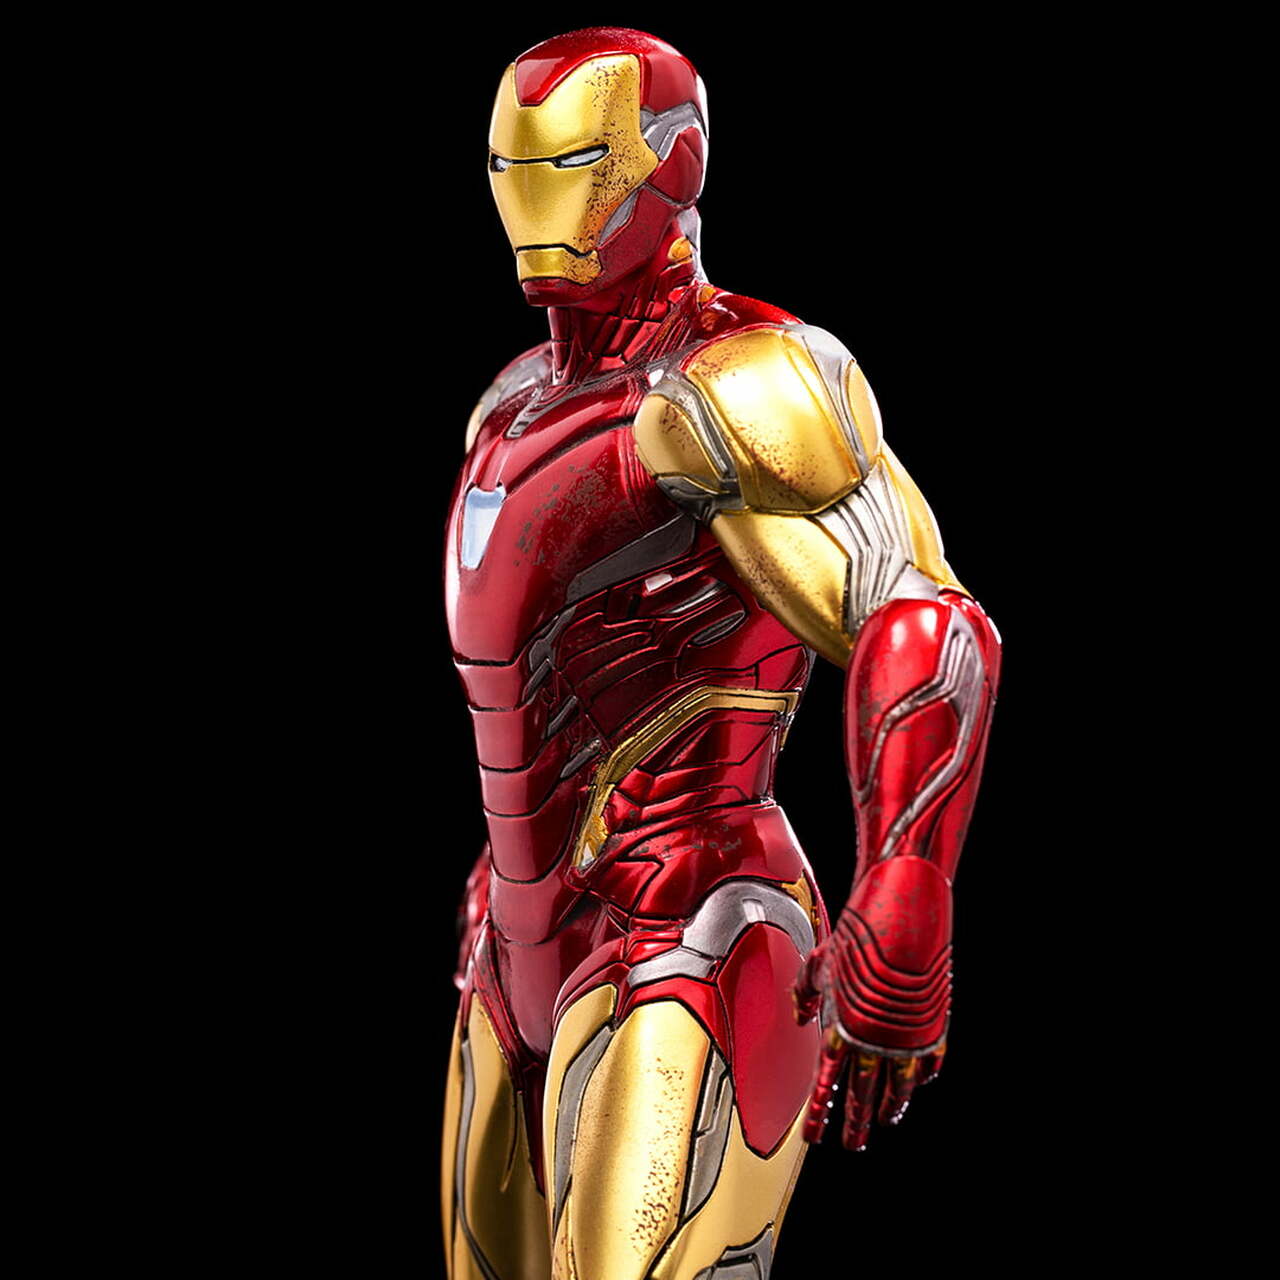 Pedido Estatua Iron Man Ultimate - The Infinity Saga marca Iron Studios BDS escala de arte 1/10